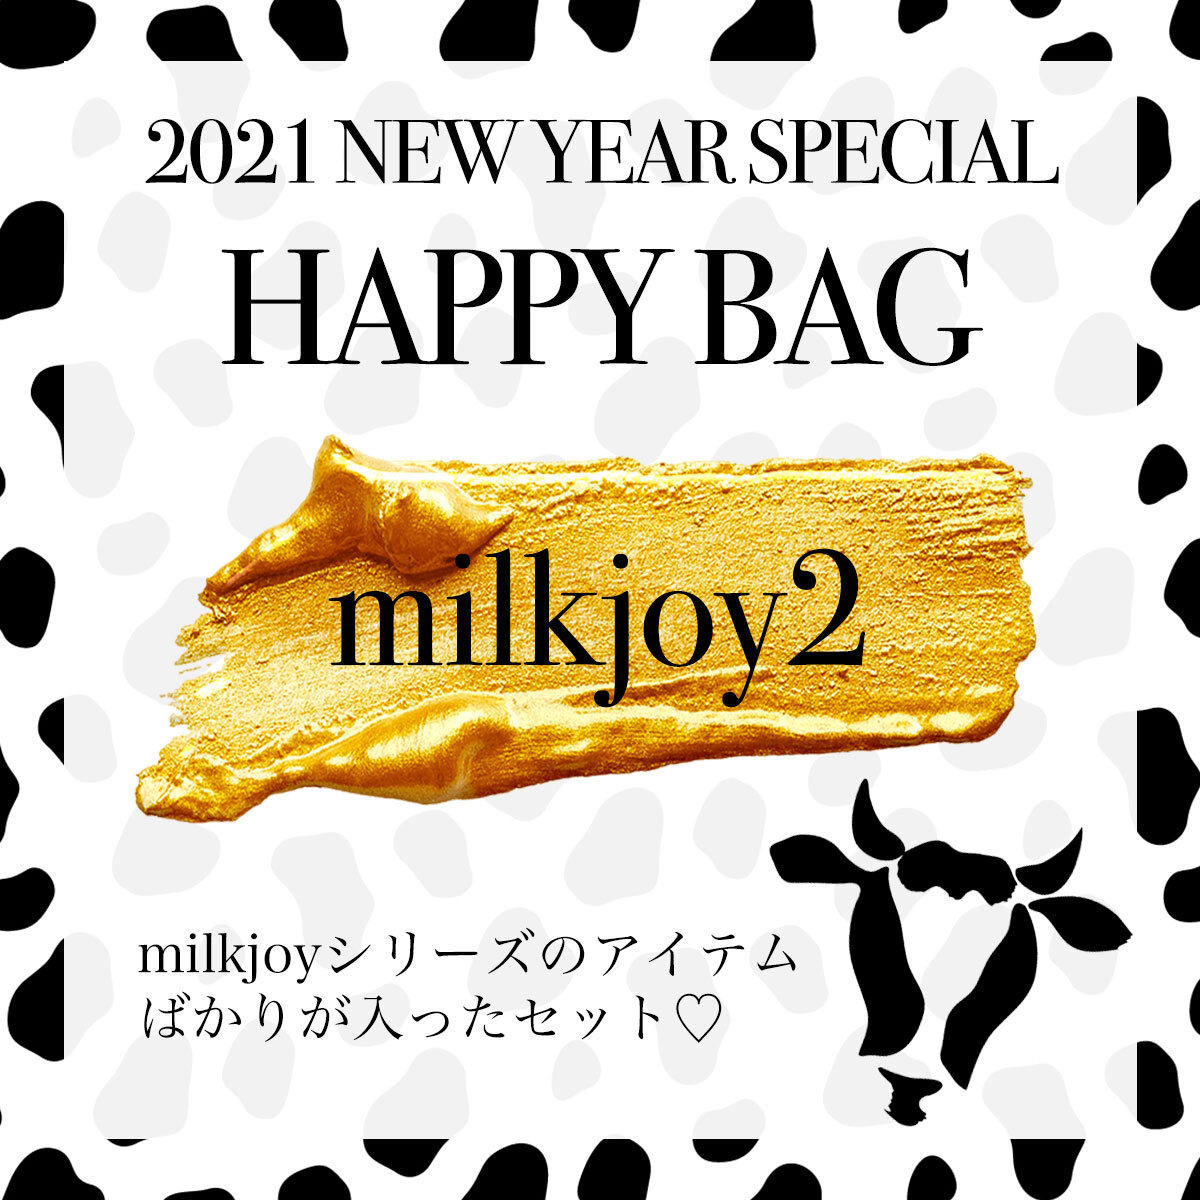 【12/25号】HAPPY BAGに大人気のナイロンポーチが加わった新タイプが登場♪